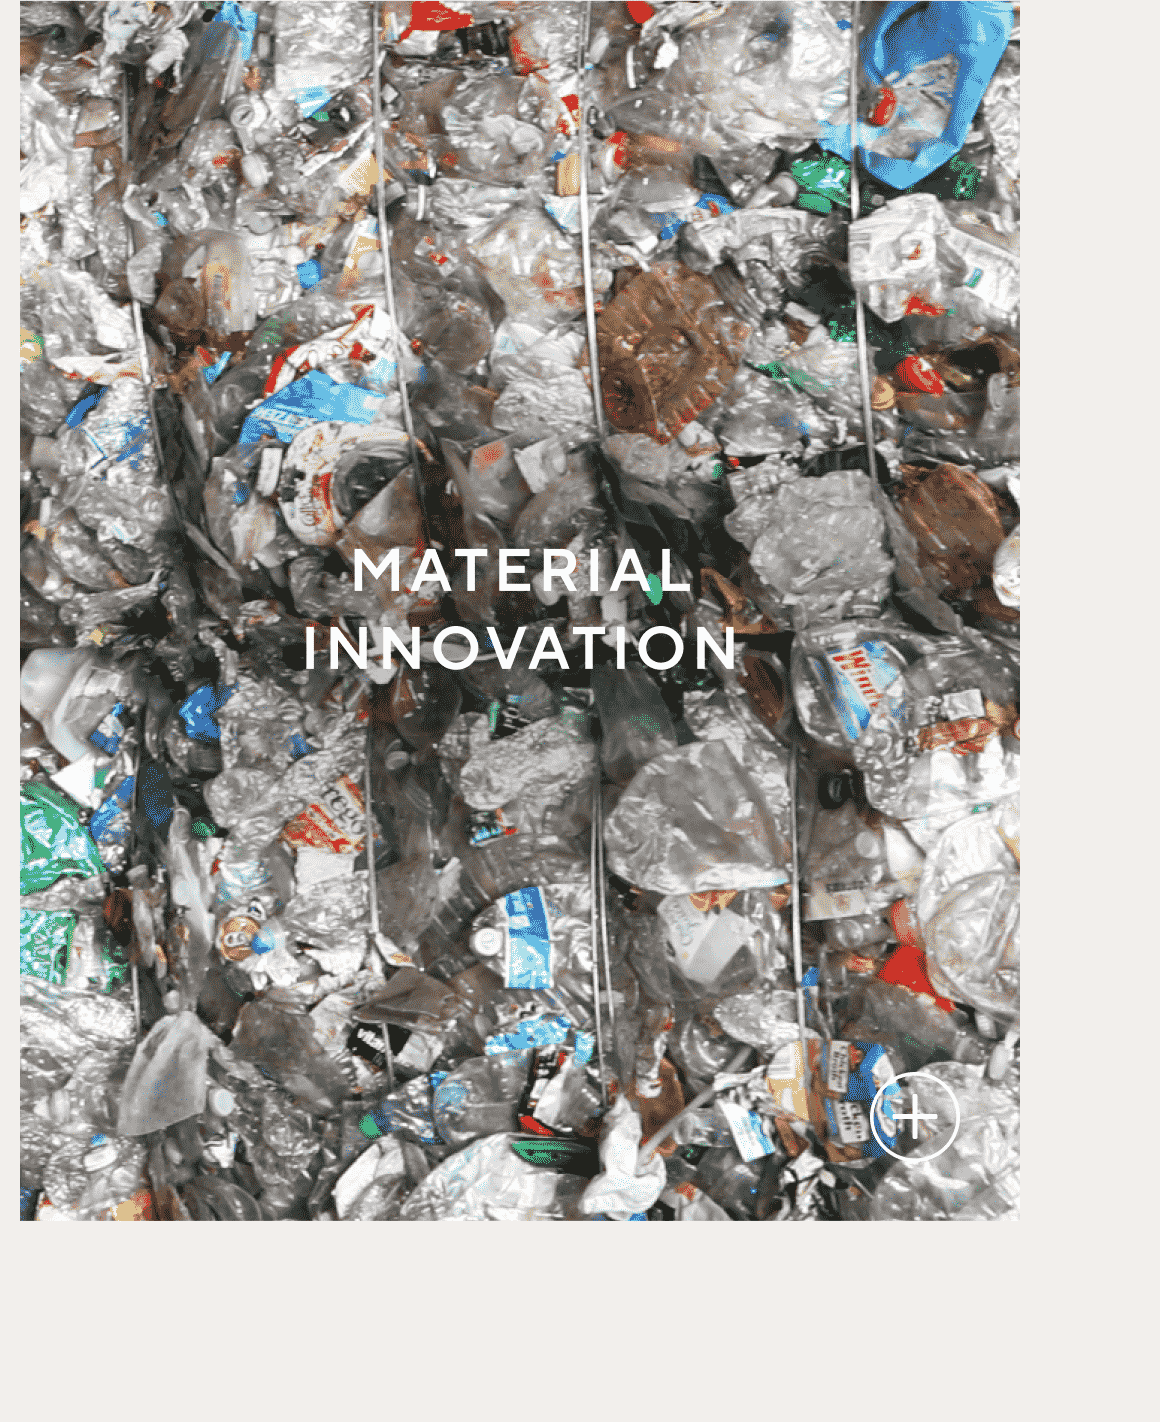 Material Innovation